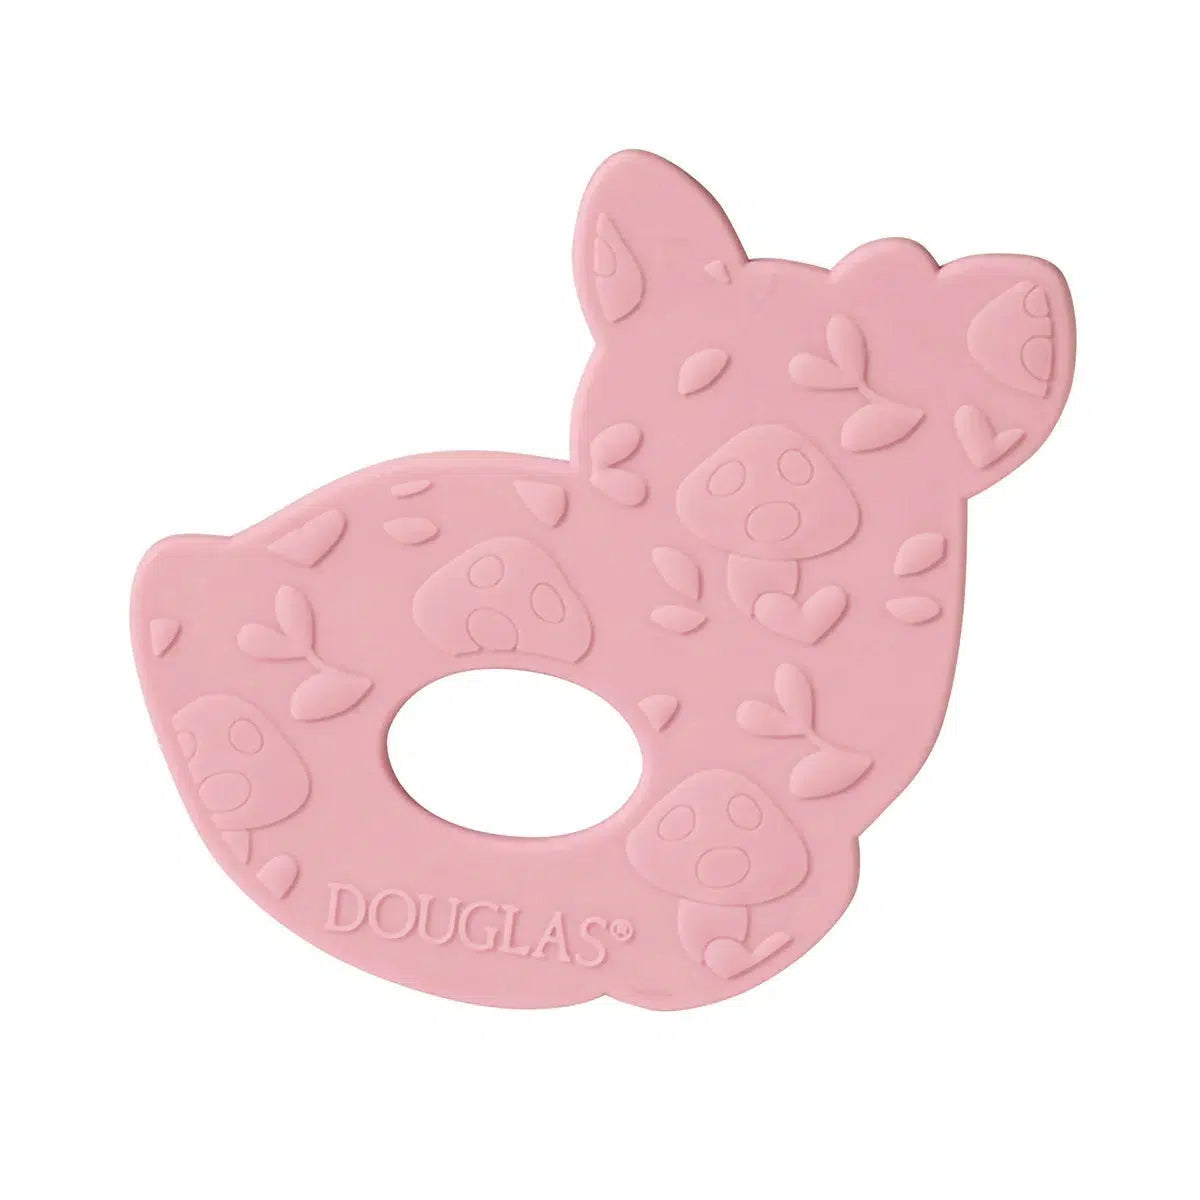 Douglas Toys-Farrah Pink Fawn Silicone Teether-6259-Legacy Toys